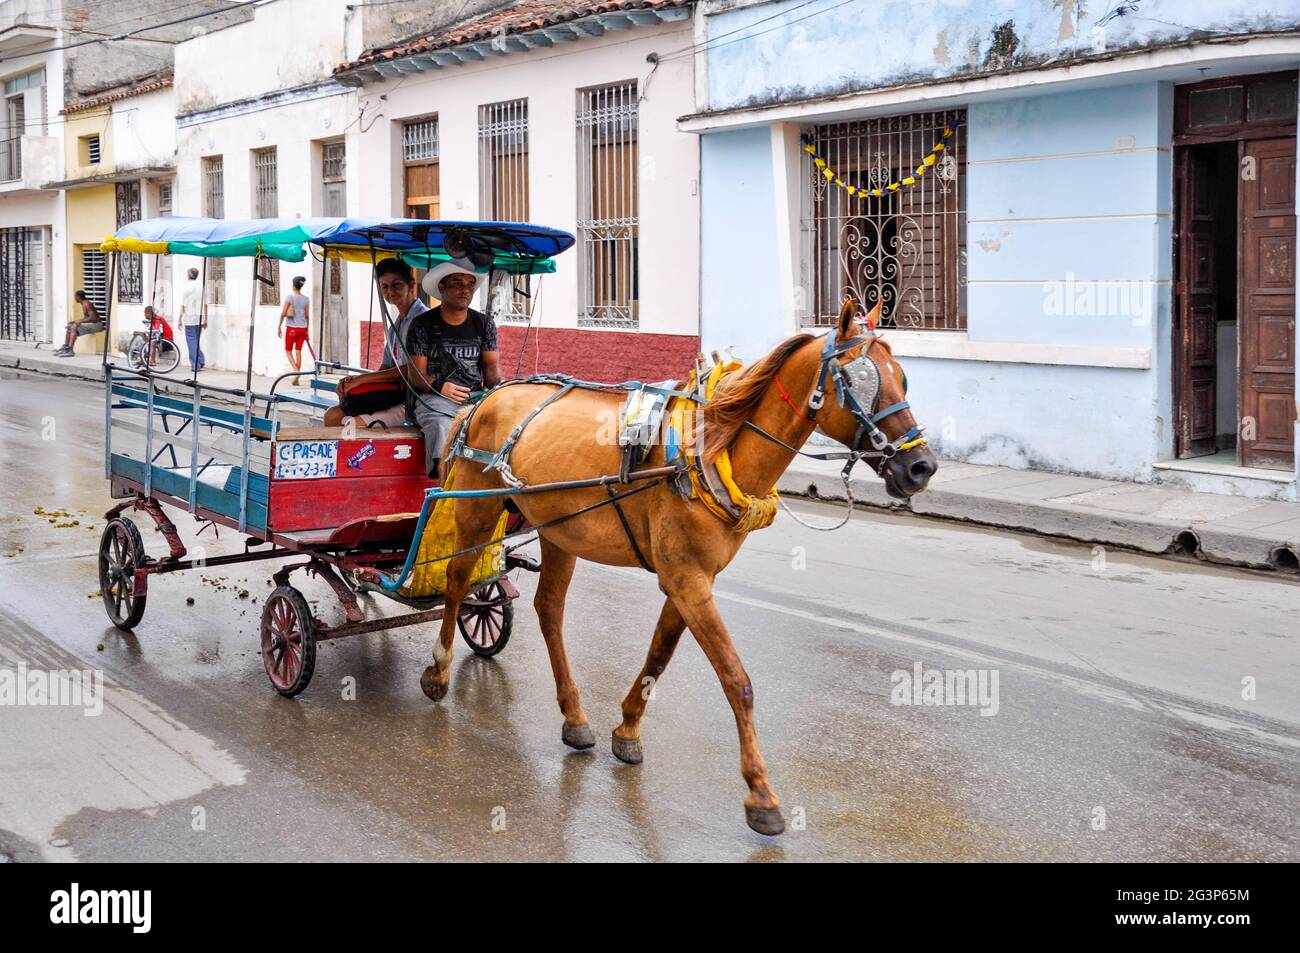 Un caballo dibujado 4 ruedas carro de pasajeros que circulan por una calle  en Cuba. Carruajes de caballos son utilizados como medio de transporte  común en Cuba Fotografía de stock - Alamy